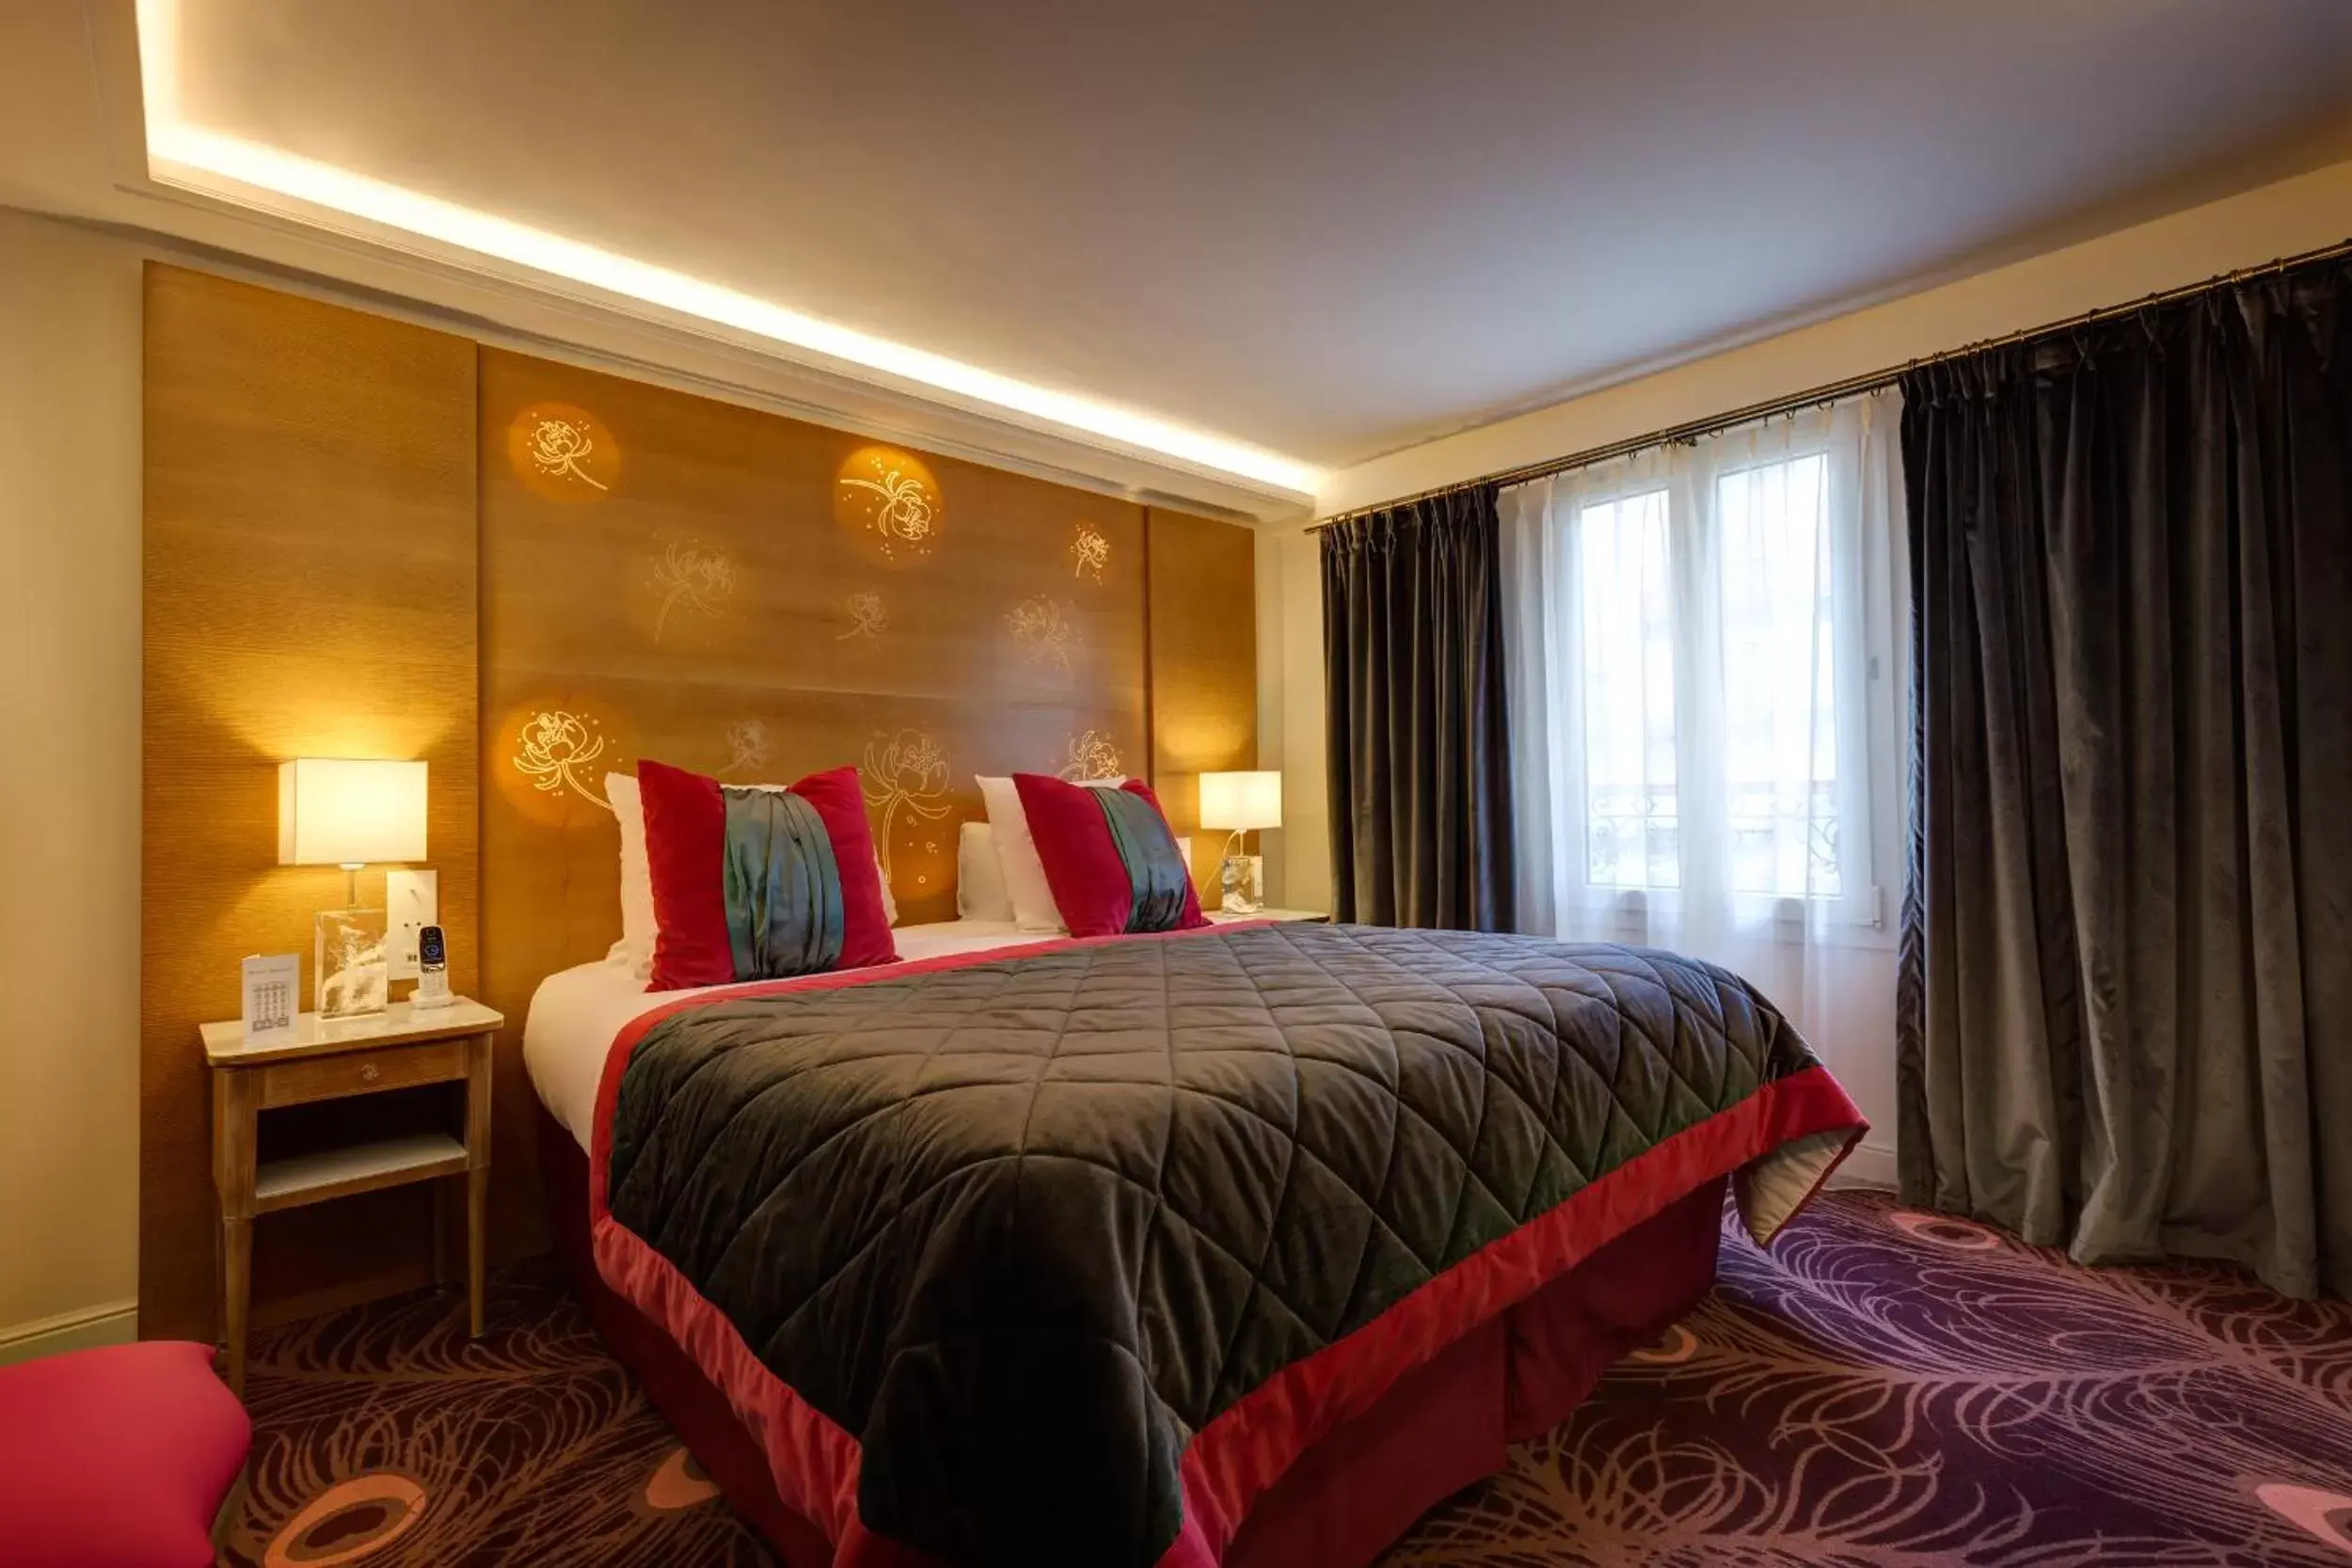 Bedroom, Room Photo in Hotel Muguet